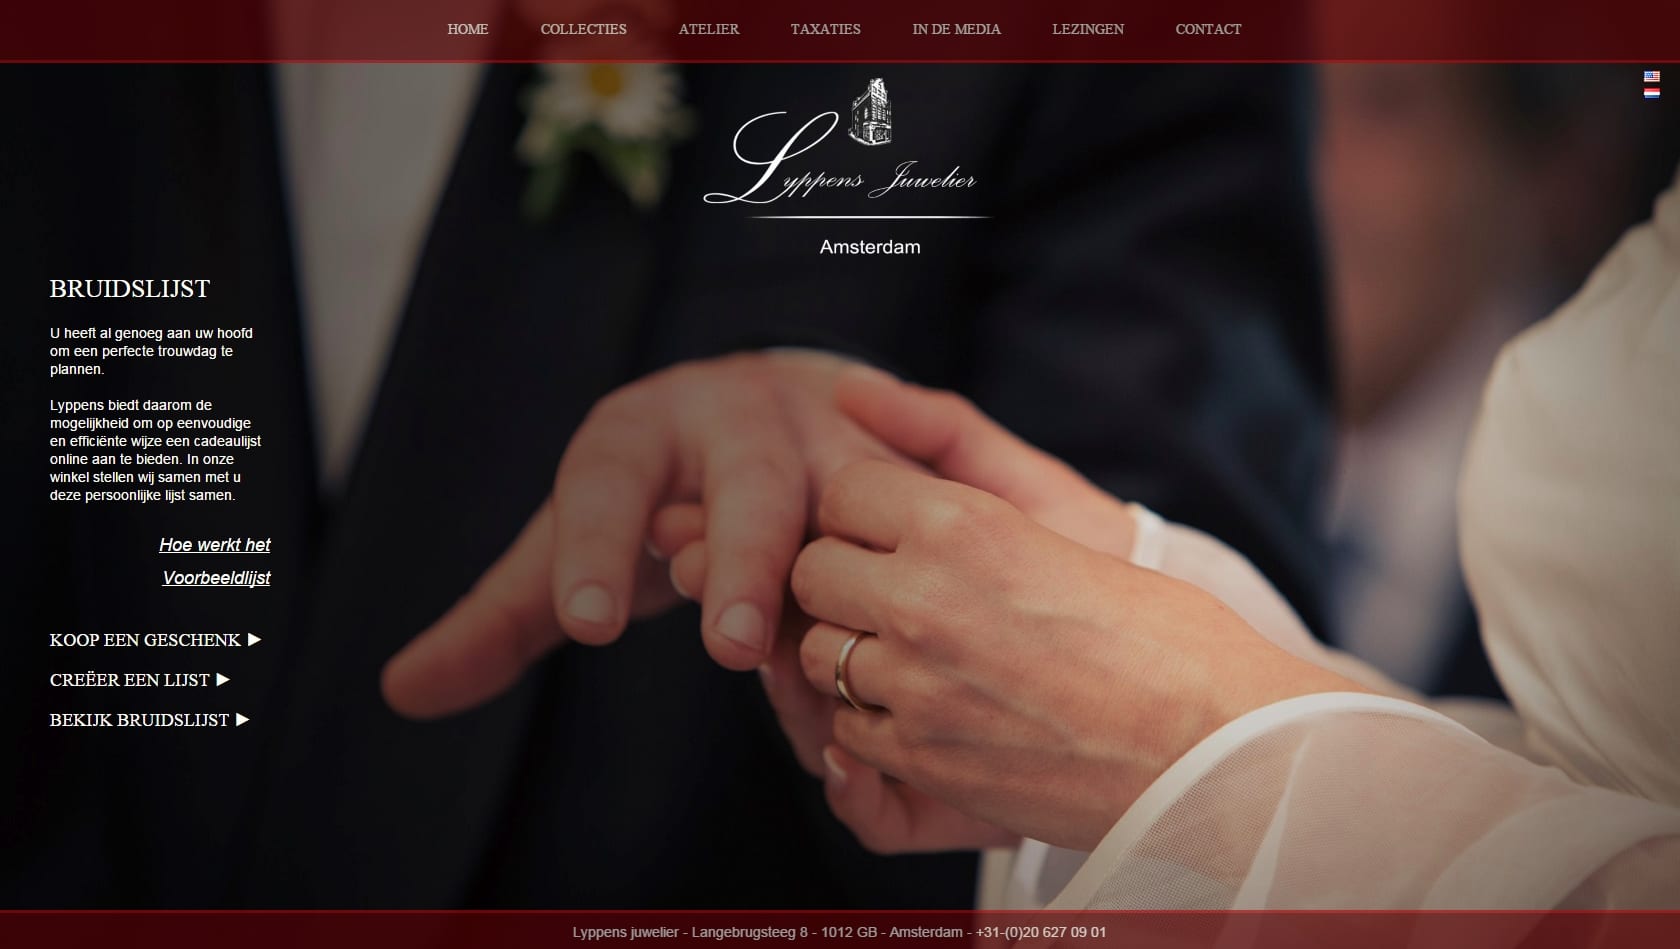 Lyppens Bruidslijsten - webshop voor bruidsparen en genodigden